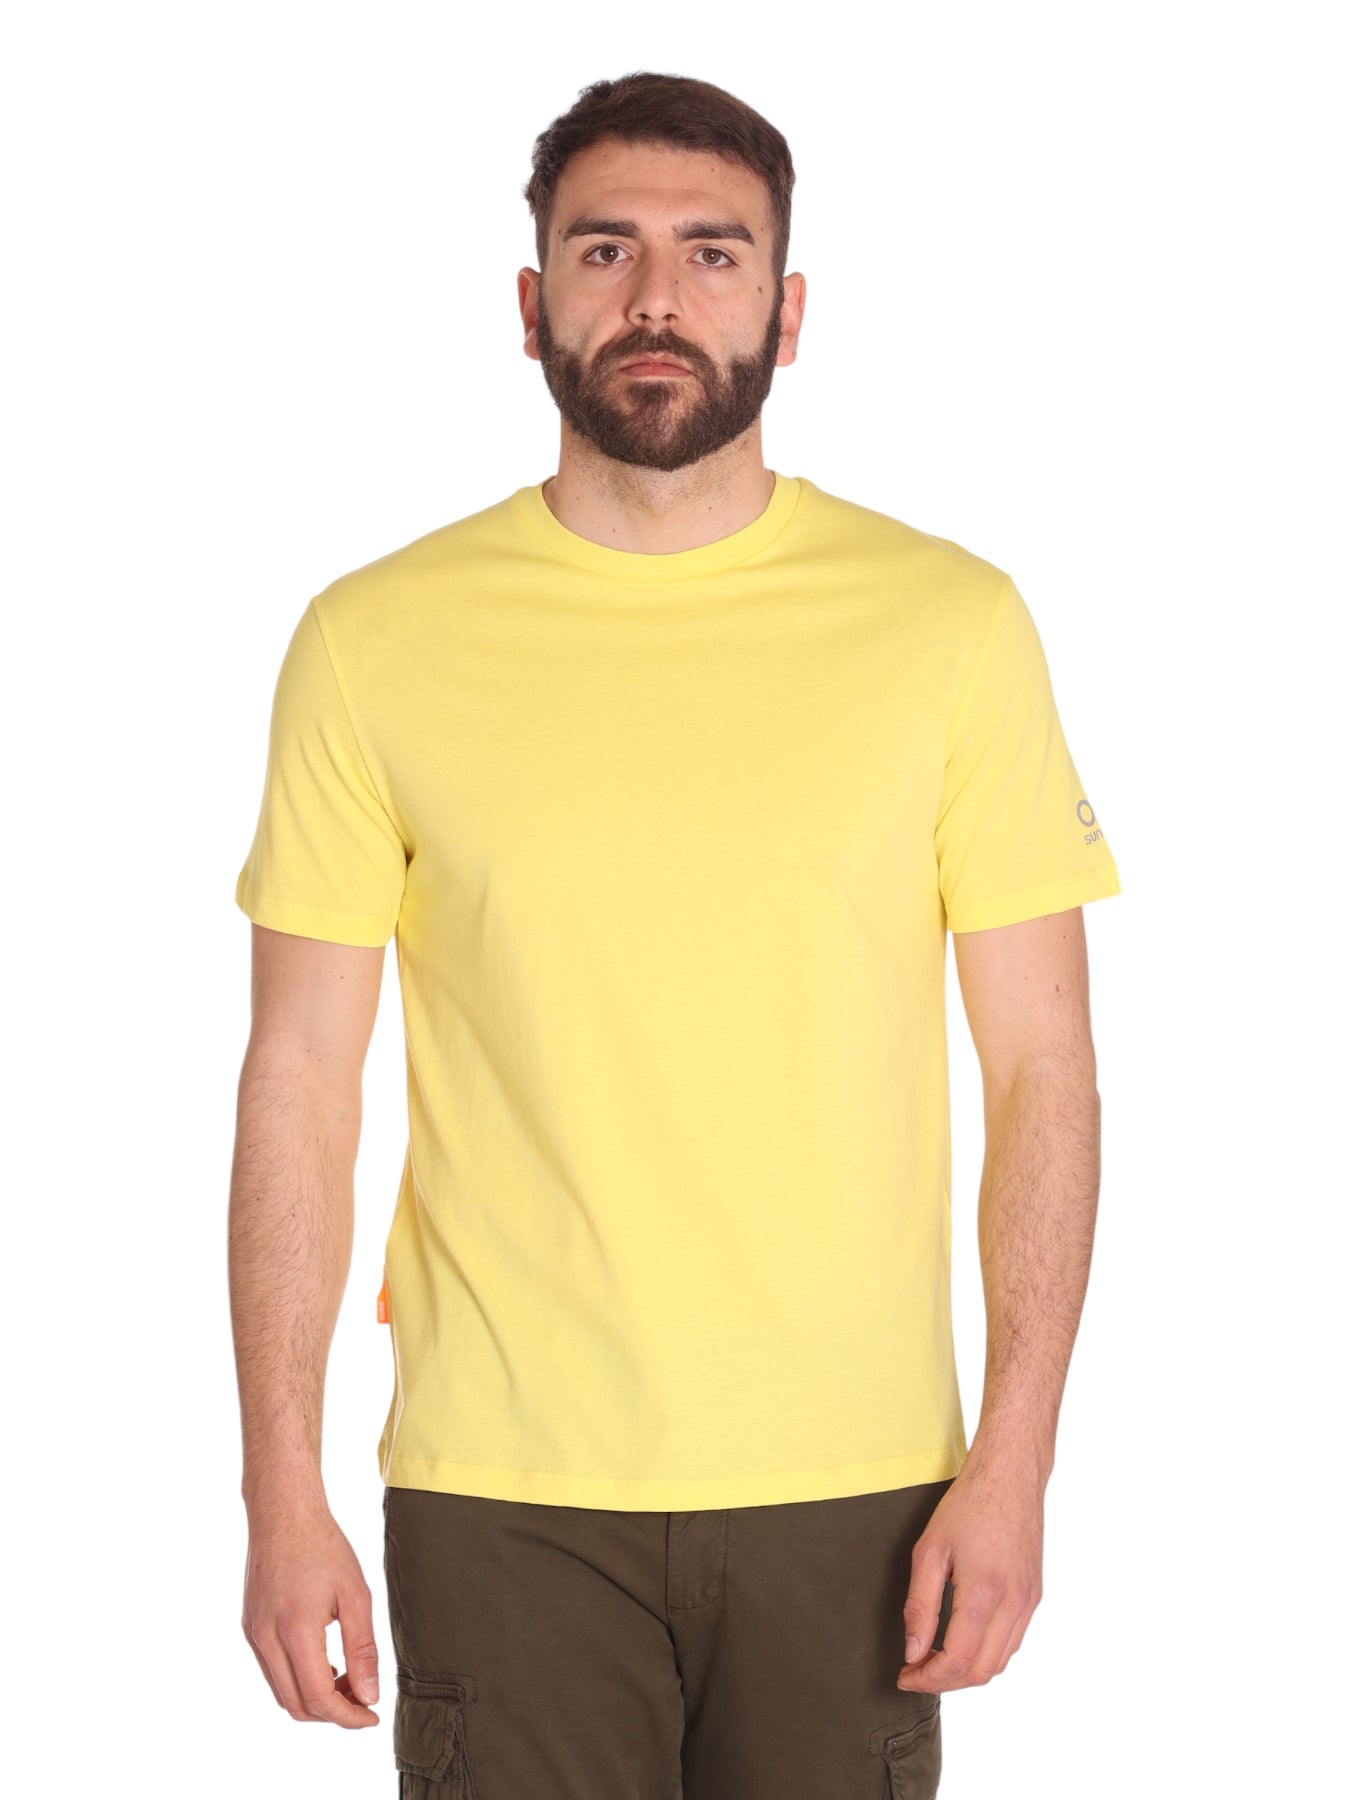 Suns T-Shirt Tss01048u Yellow Fluo